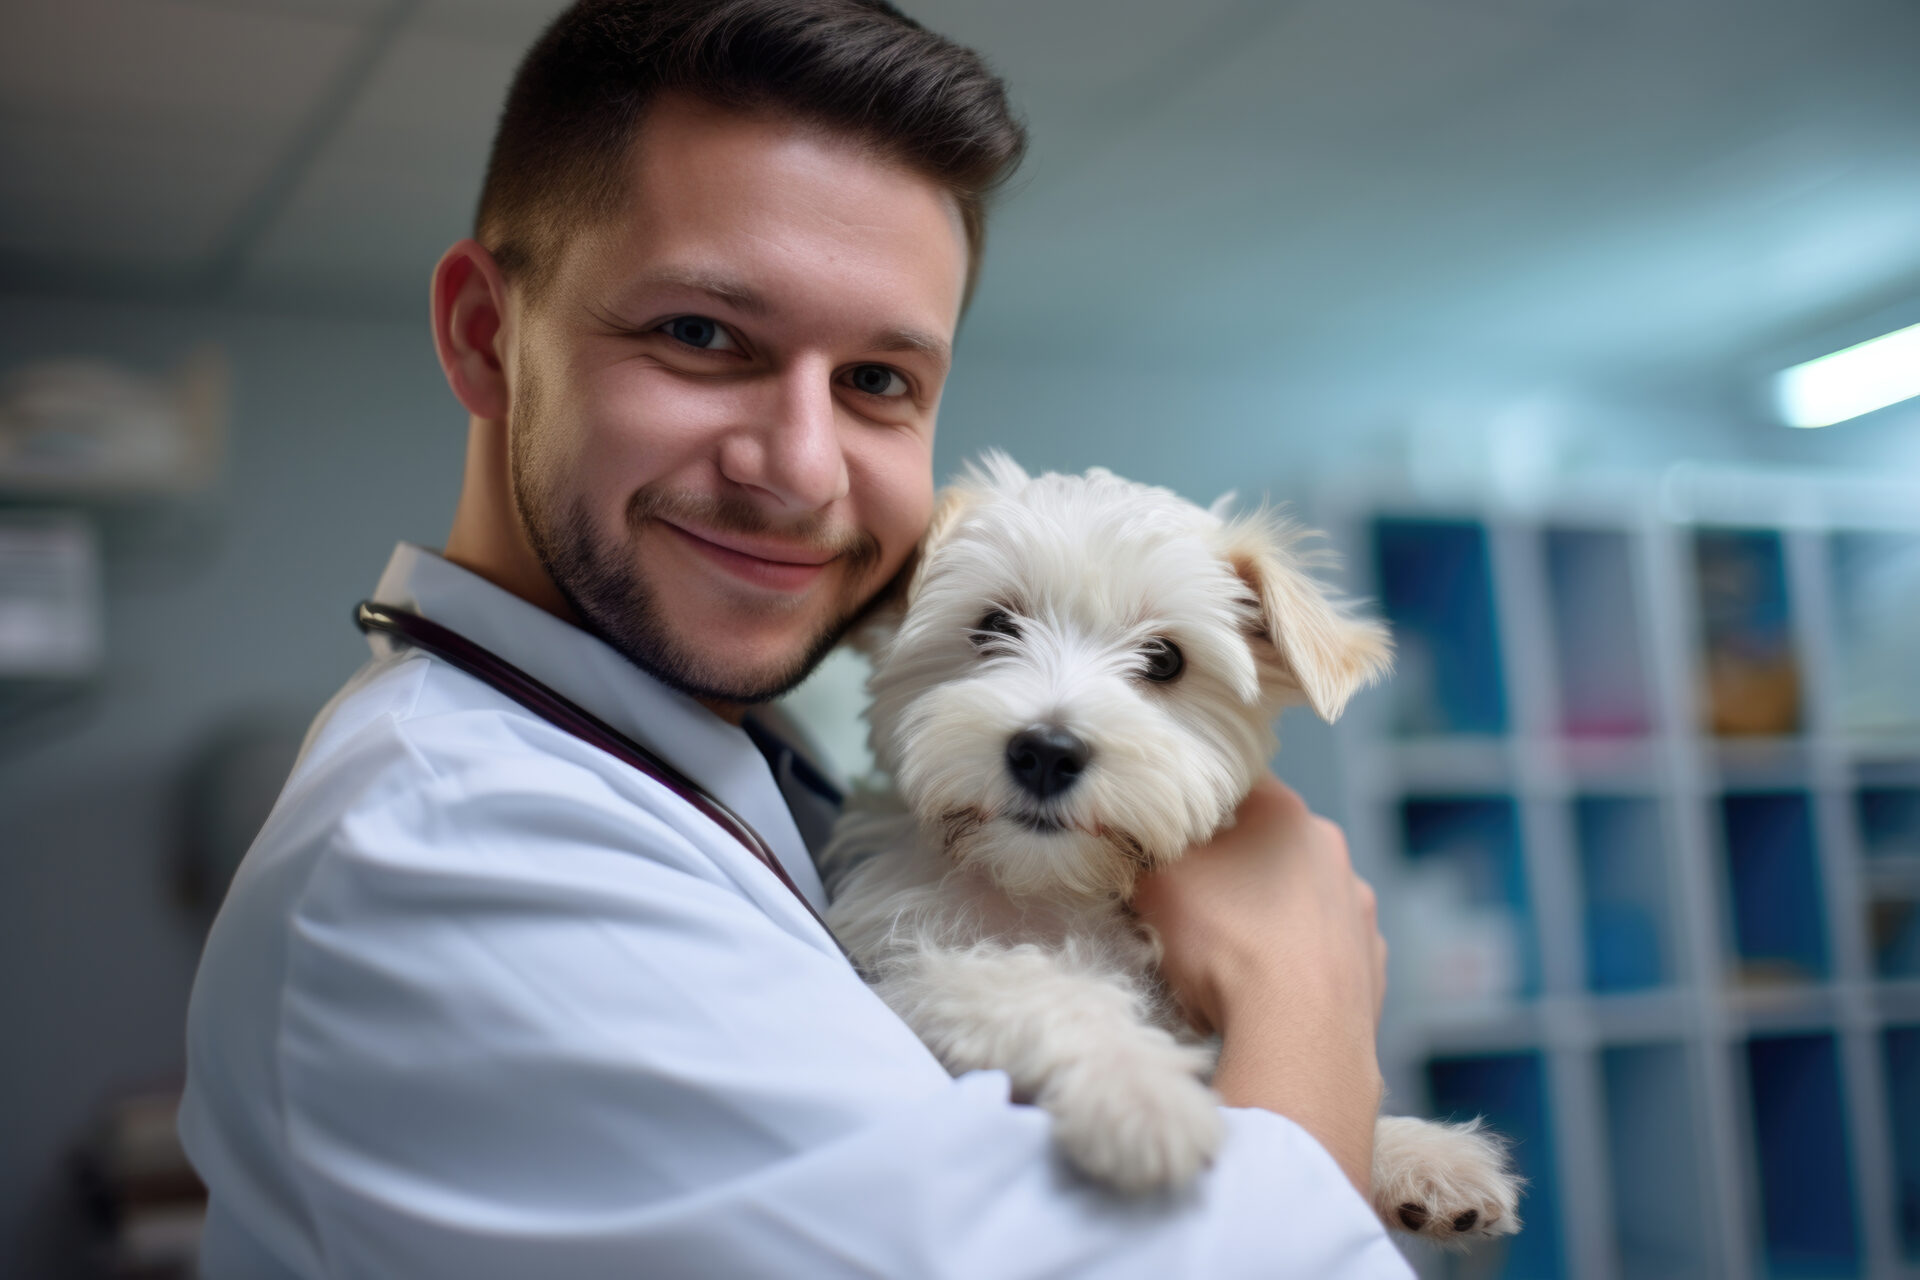 Bild eines Tierarztes, der einen Hund untersucht, mit der Alt-Text-Beschreibung: "Tierarzt untersucht die Analdrüsen eines Hundes